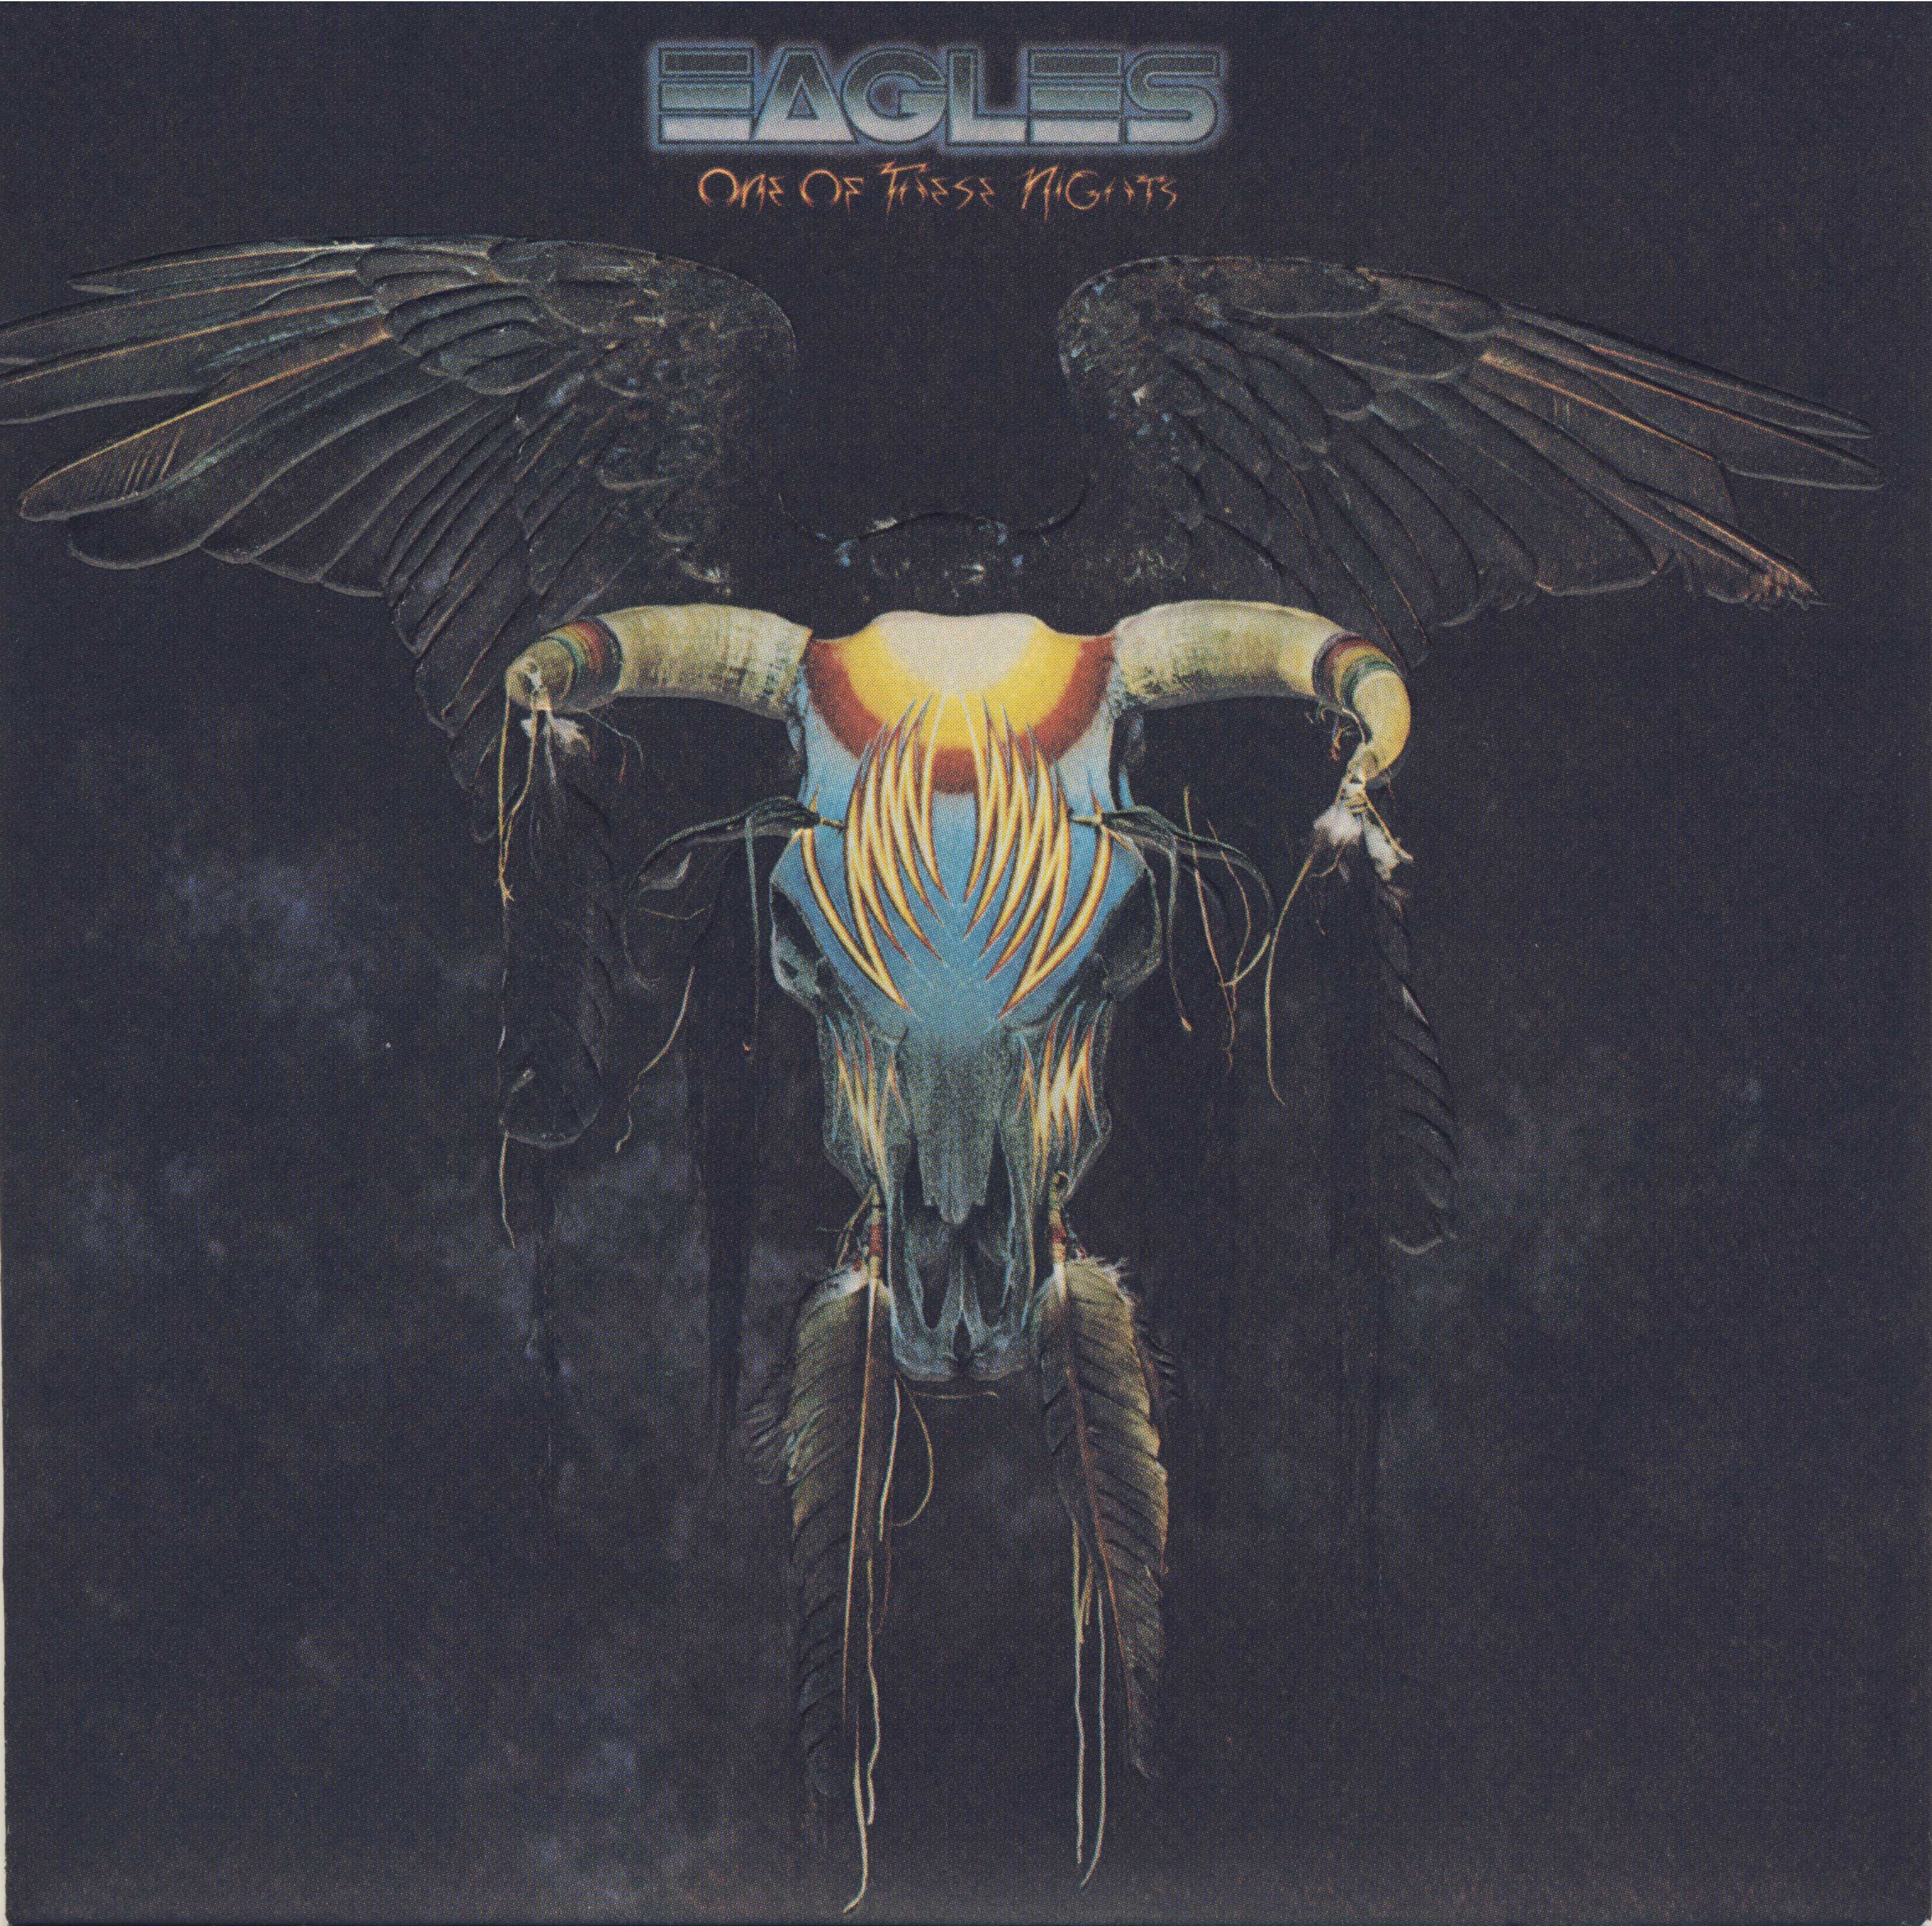 ซีดีเพลง CD 1975 - Eagles - One Of These Nights,ในราคาพิเศษสุดเพียง159บาท